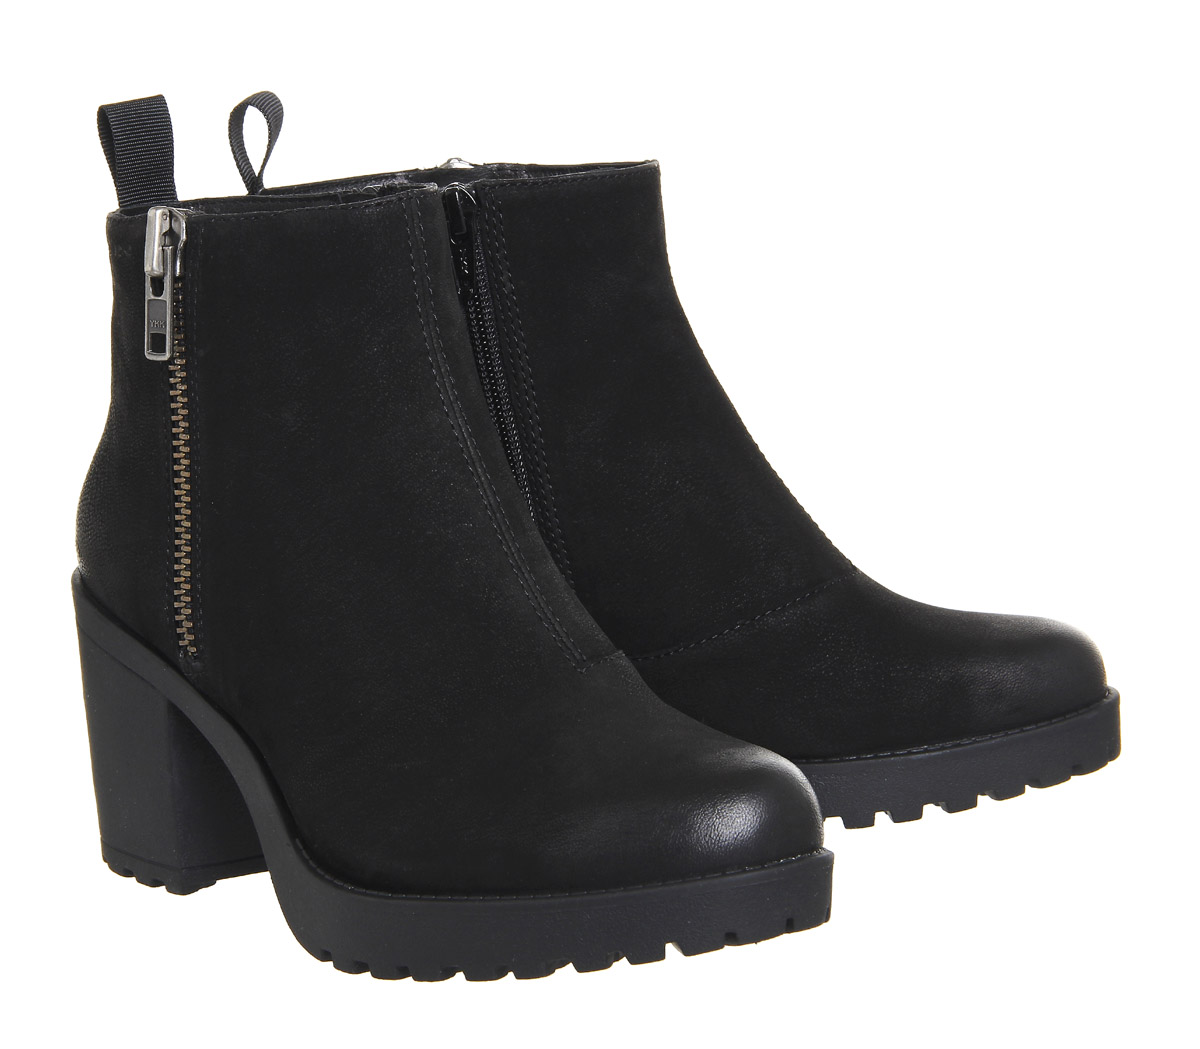 Vagabond Shoemakers Grace Side Gold Zip Boots Black Nubuck - Women's ...